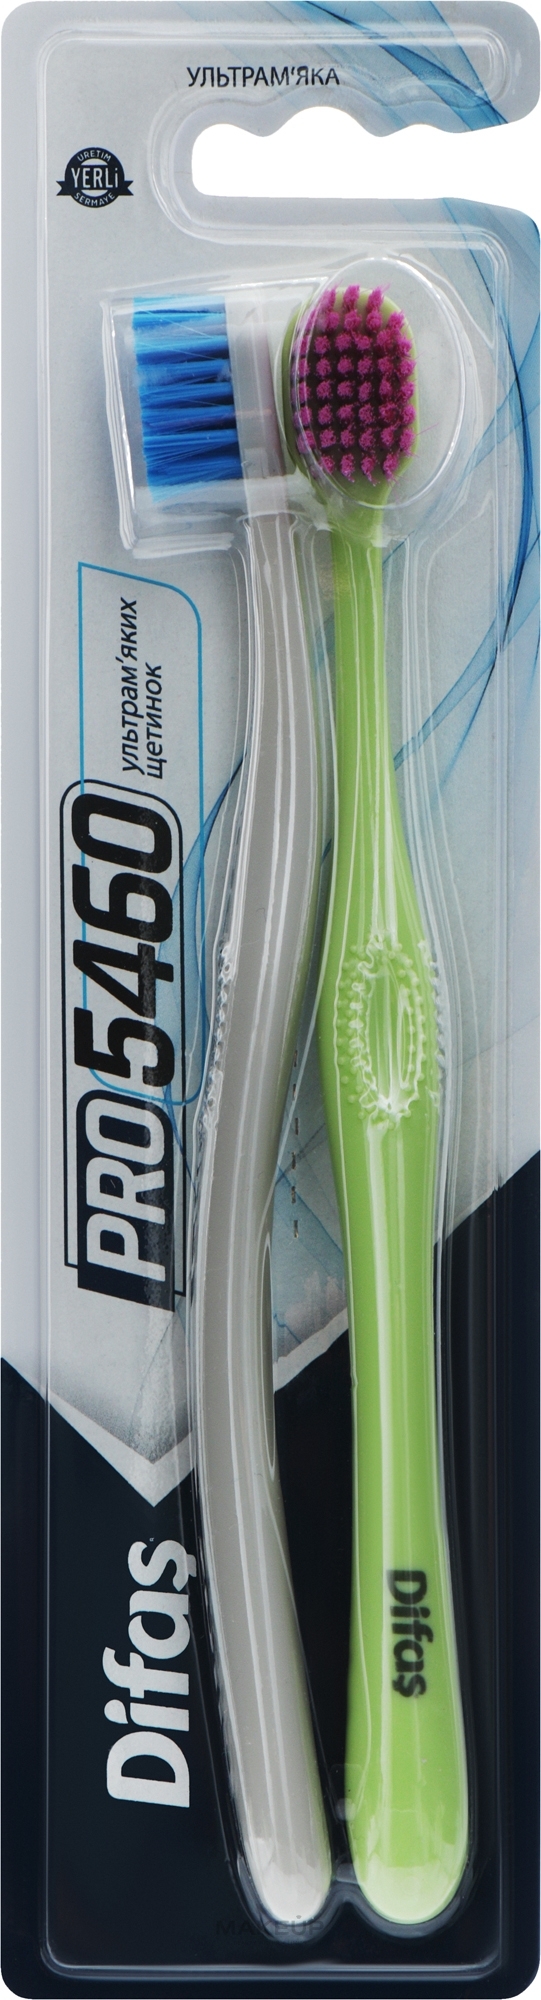 Набор зубных щеток "Ultra Soft", салатовая + серая - Difas PRO 5460 — фото 2шт